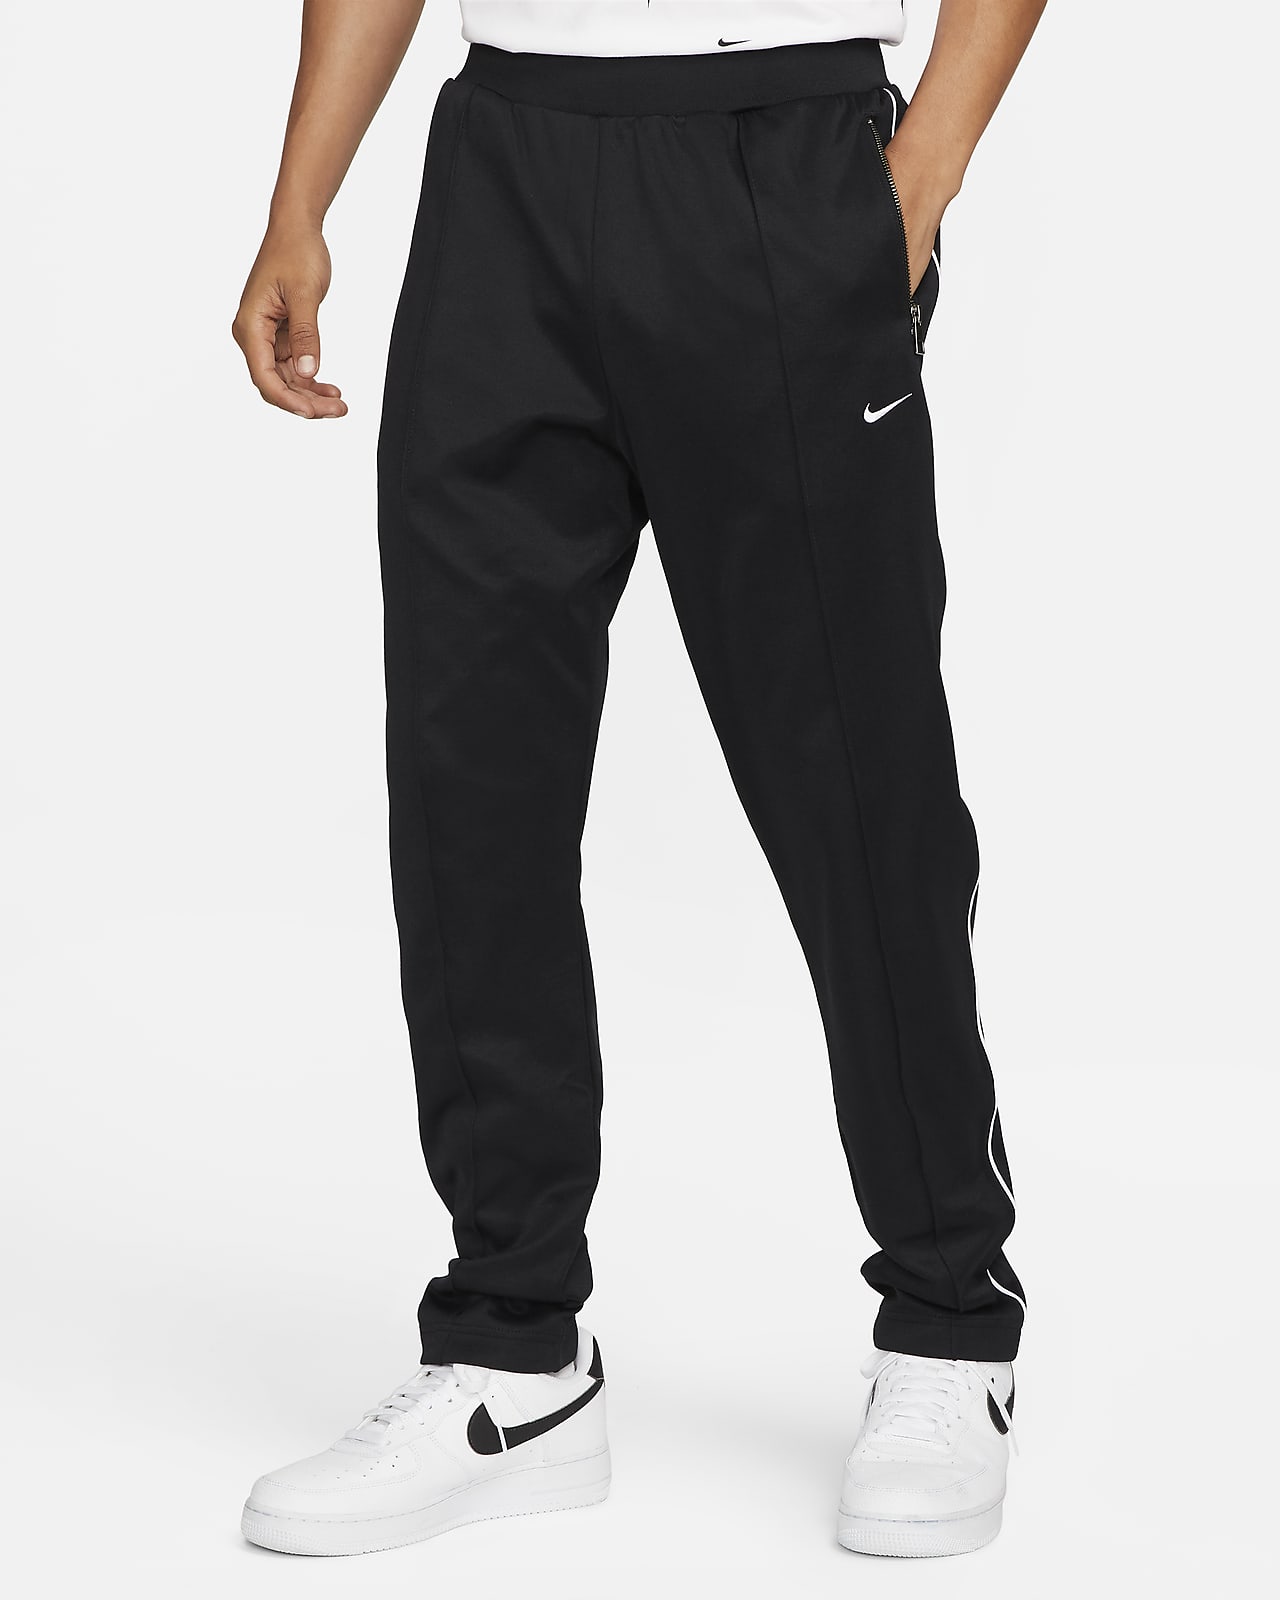 Opblazen Stier Integraal Nike Sportswear Authentics Men's Track Pants. Nike.com